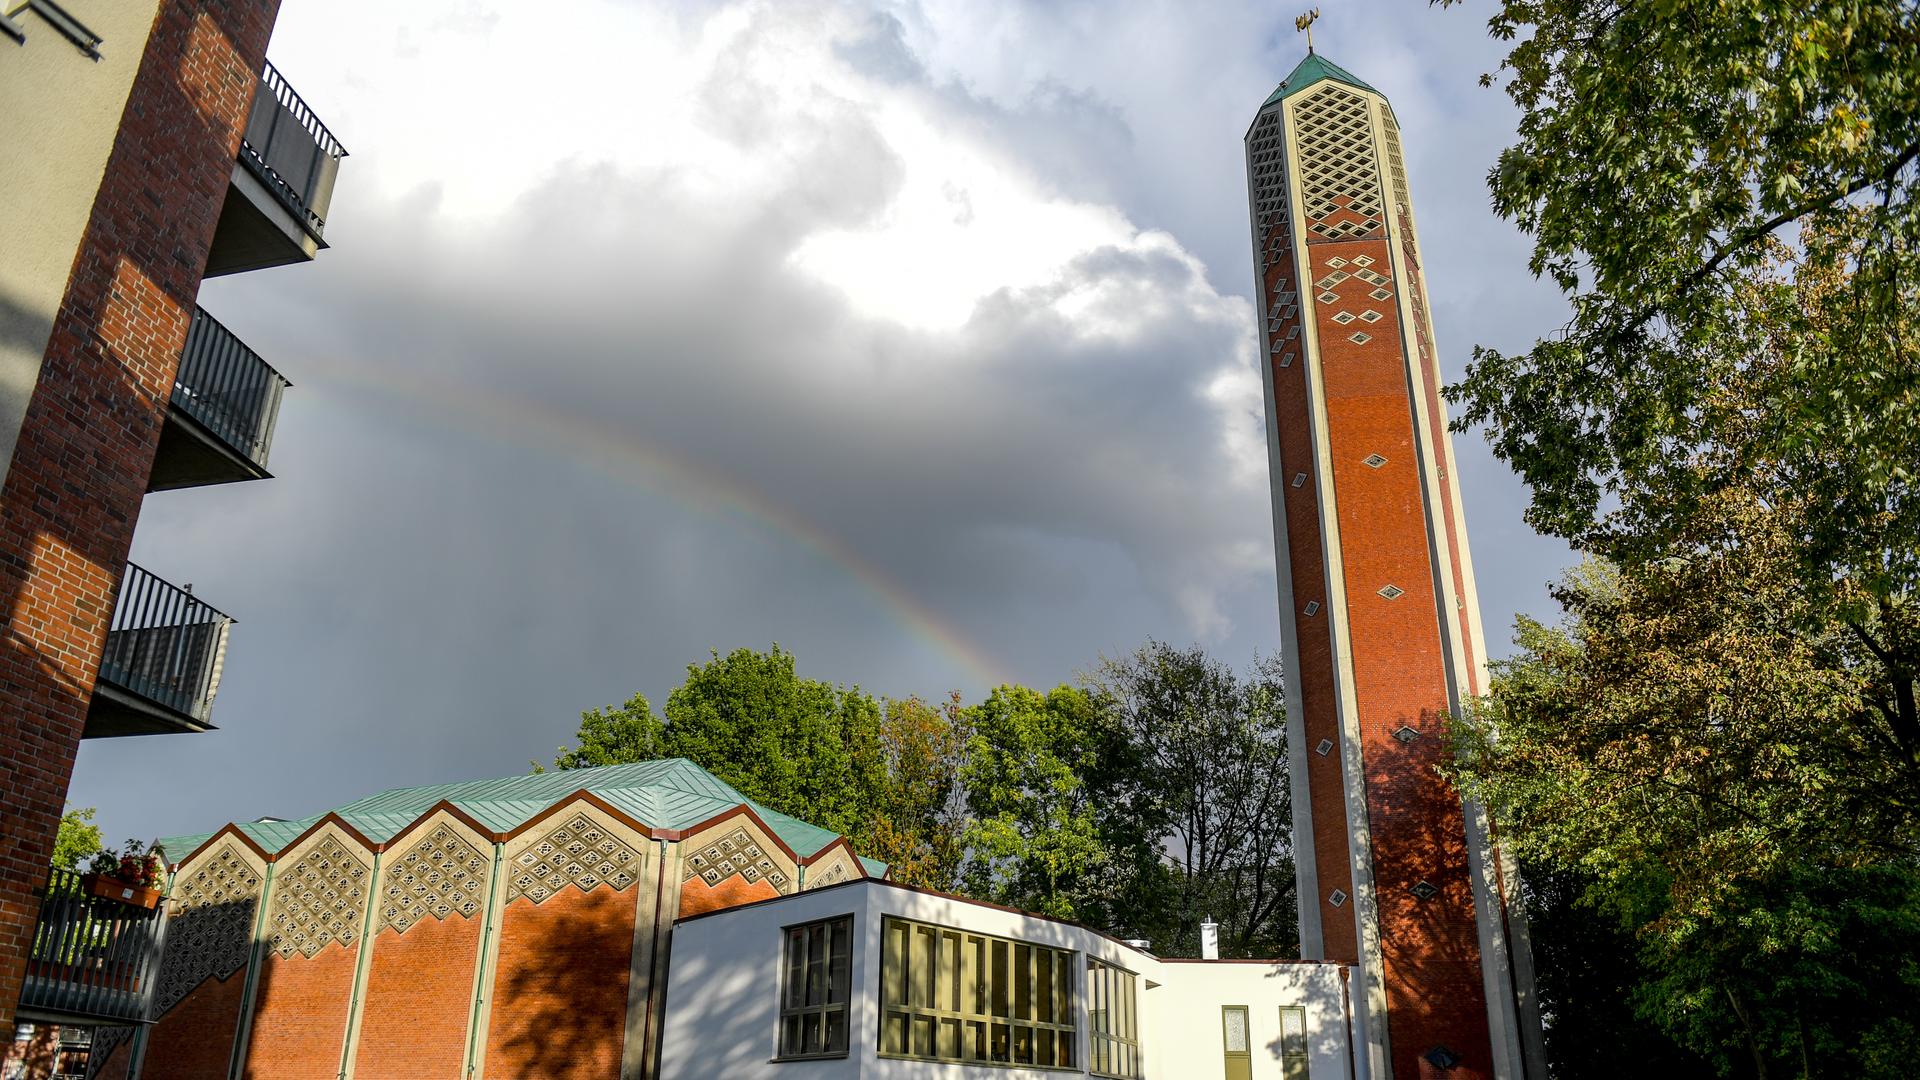 Außenansicht einer ehemaligen evangelischen Kirche aus den 1960er-Jahren mit einem schlanken Backstein-Turm, auf dem jedoch kein Kreuz mehr angebracht ist. Im Hintergrund: ein Regenbogen.